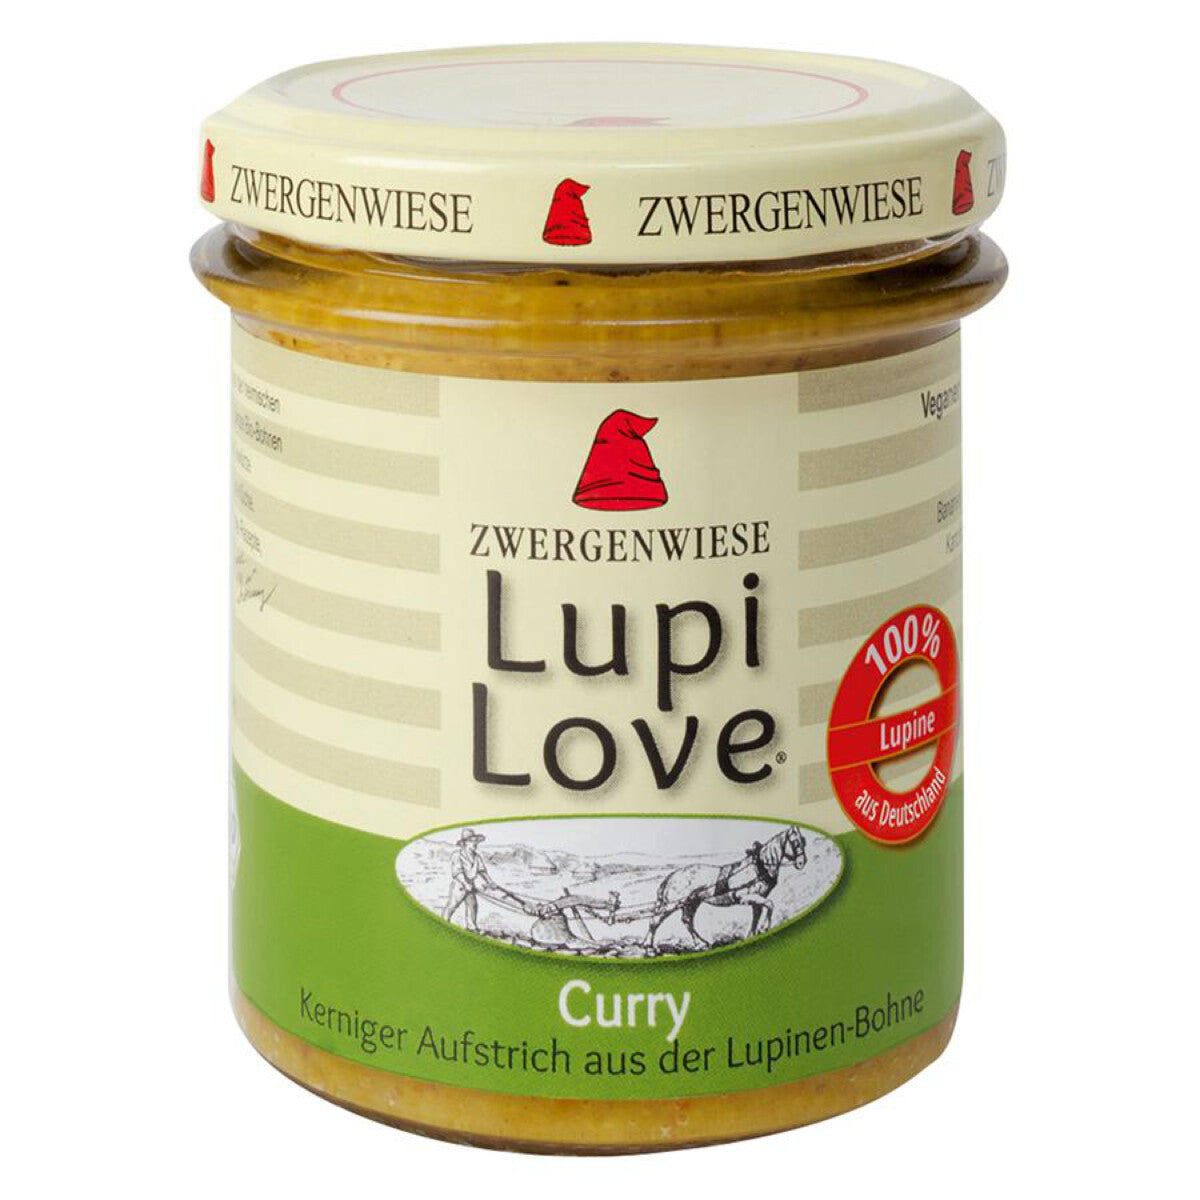 ZWERGENWIESE LupiLove Curry - 165 g